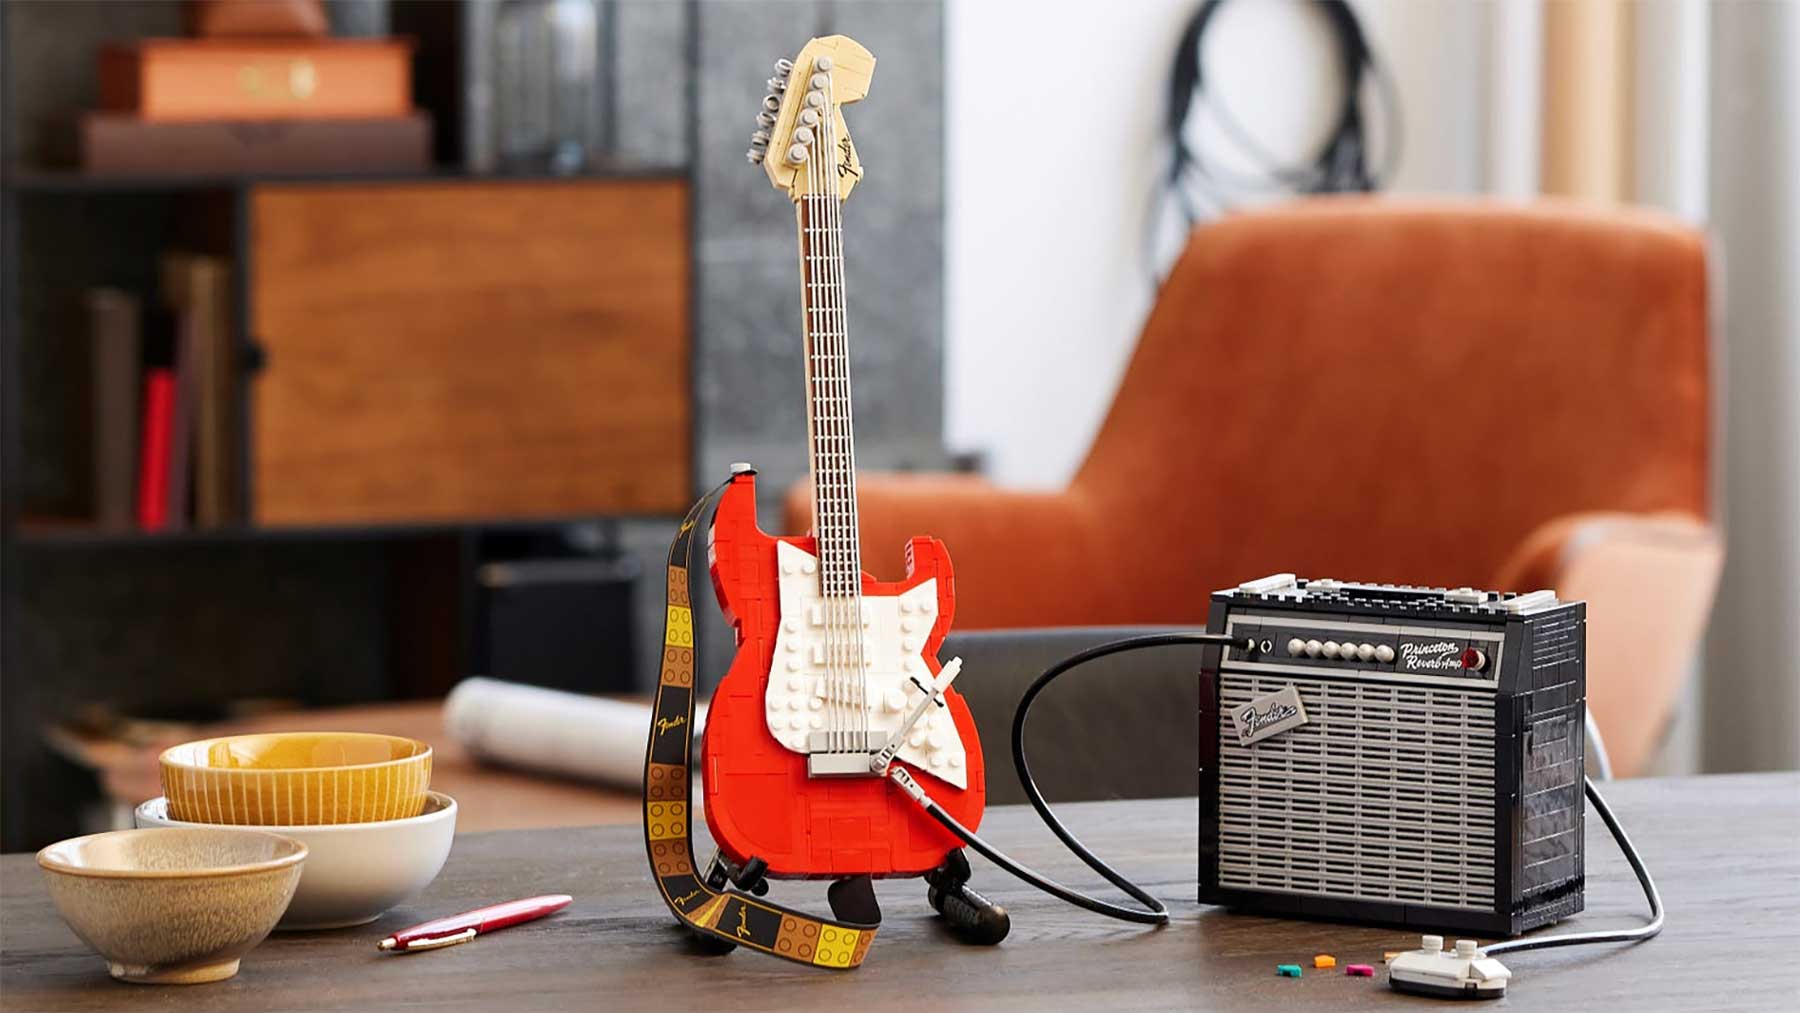 LEGO-Gitarre: Das Fender-Stratocaster-Design